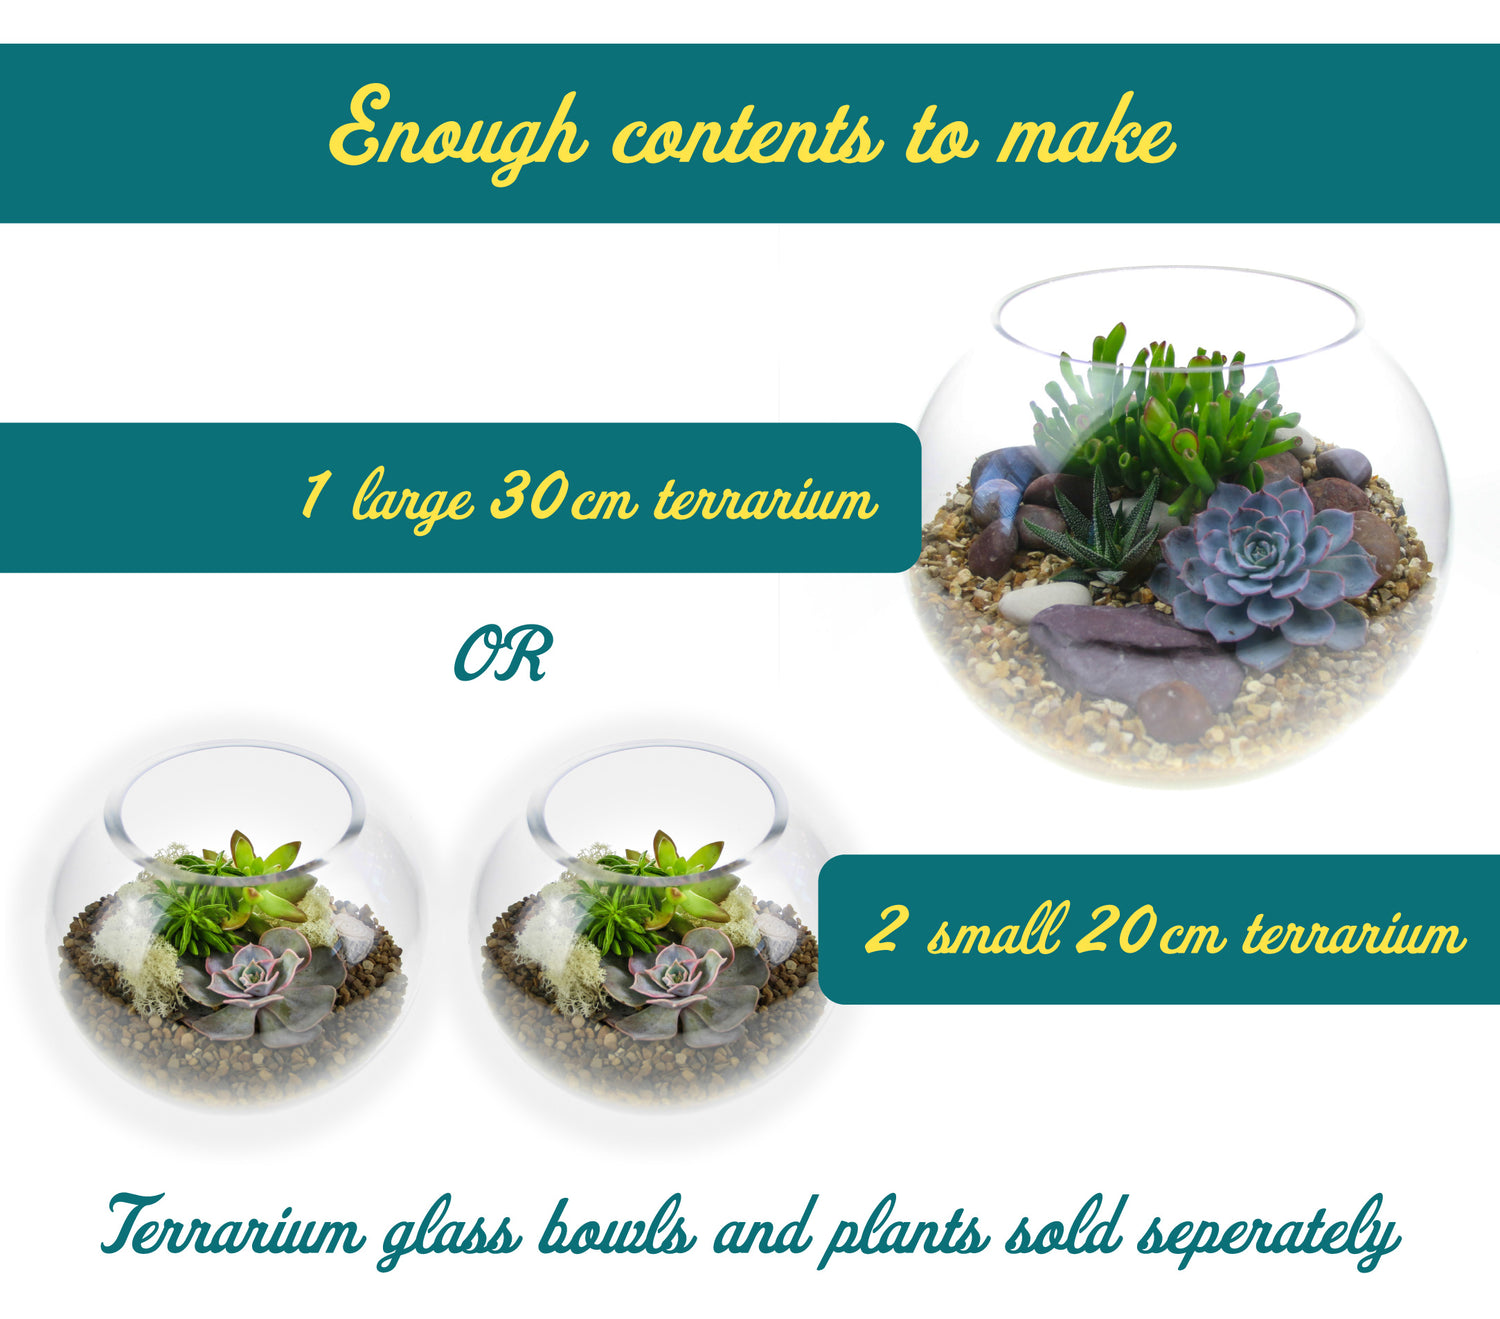 Size guide for terrarium contents